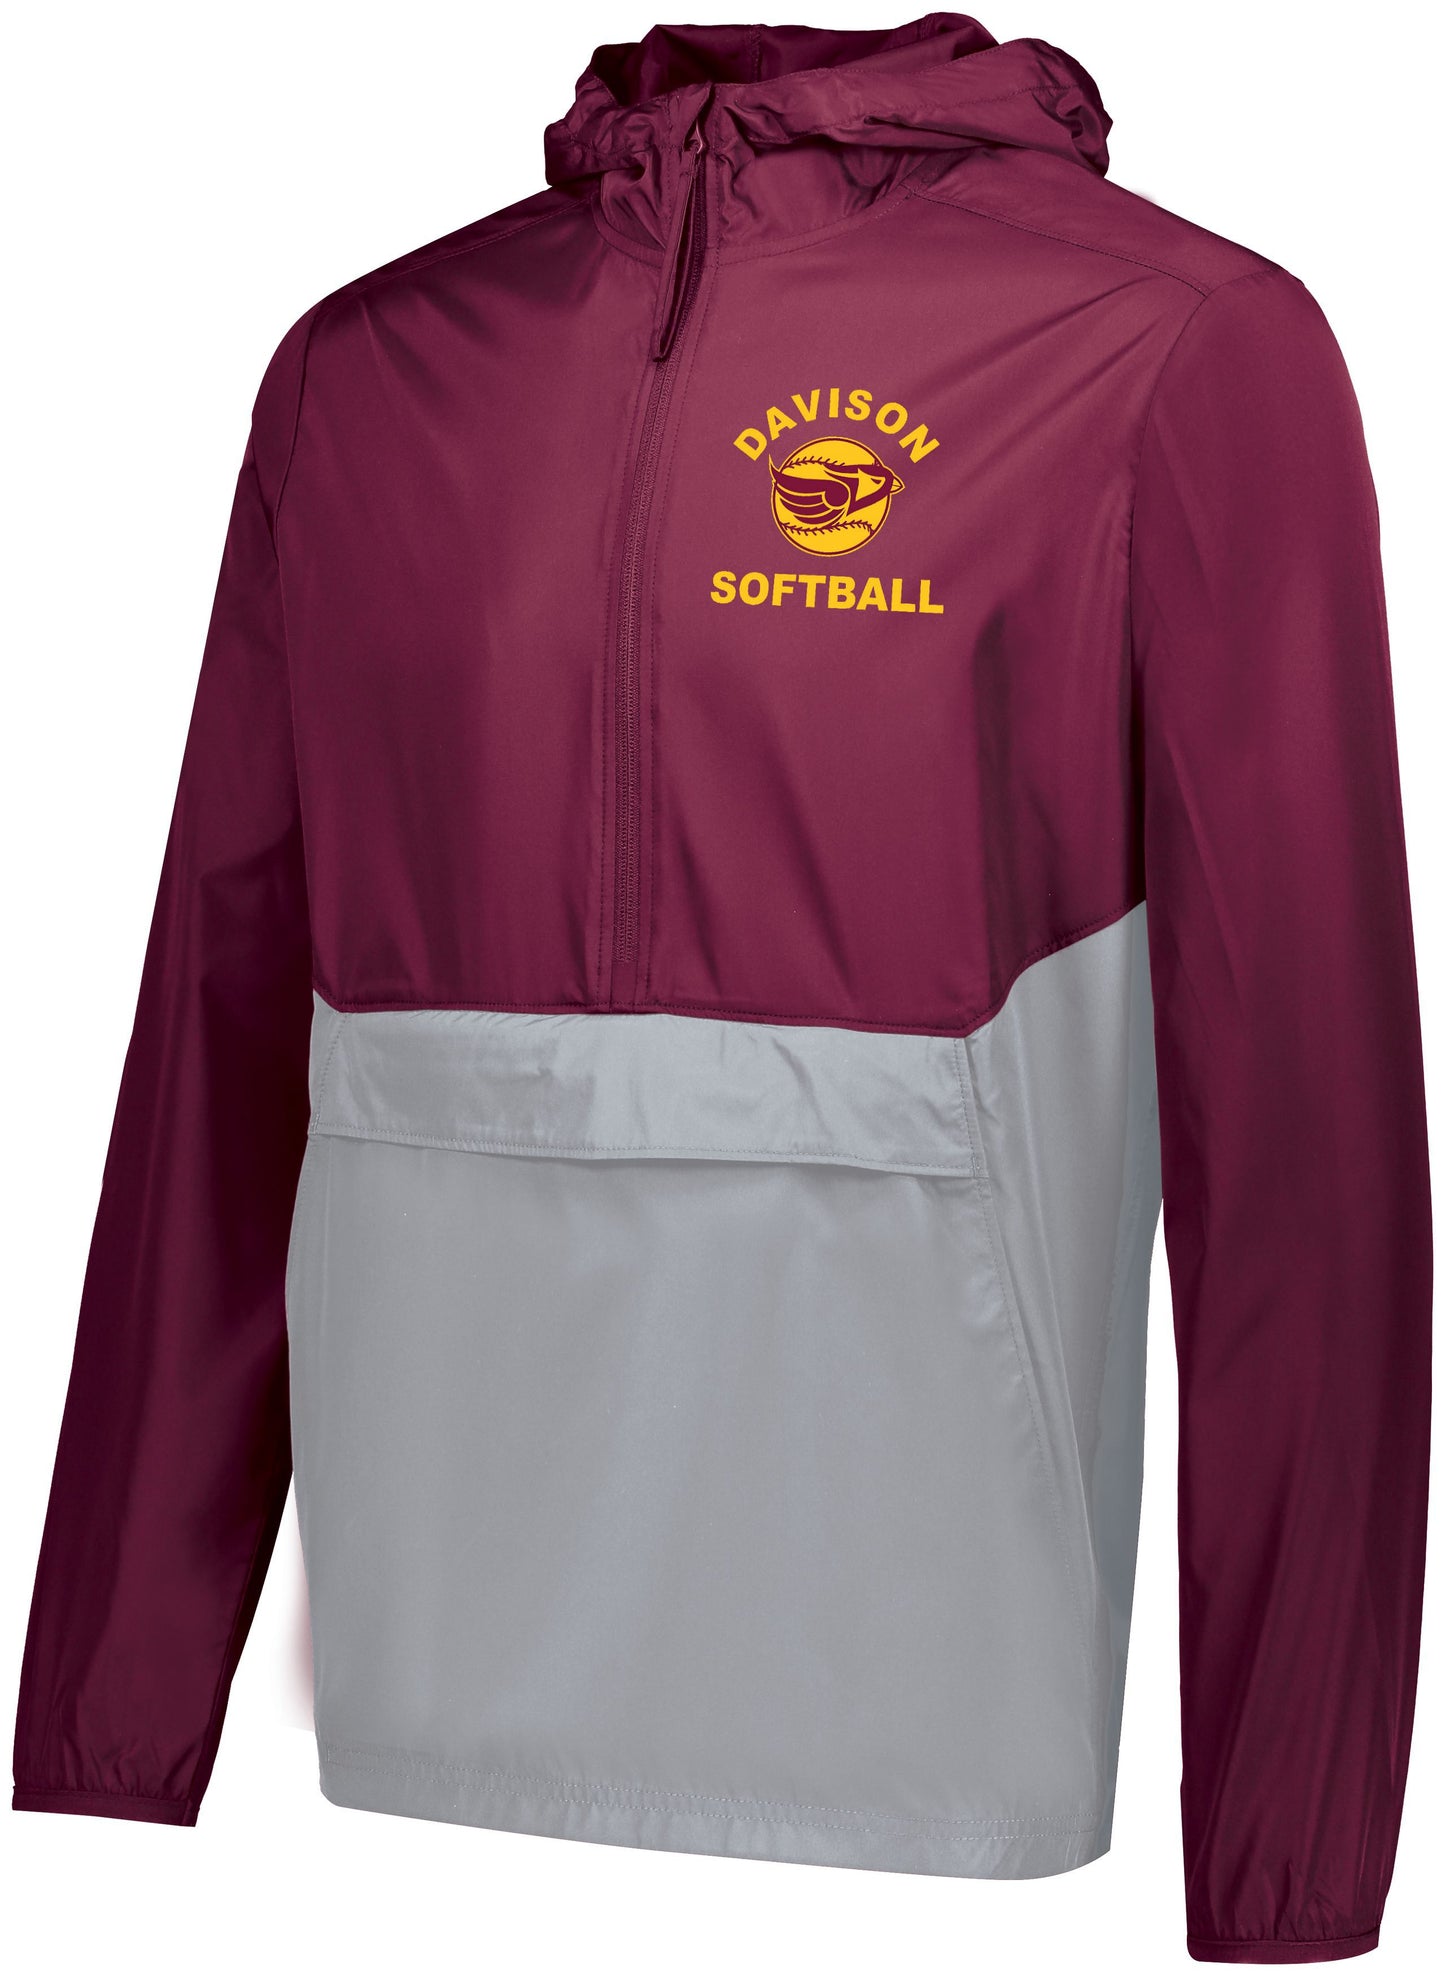 Davison Softball Pack Pullover